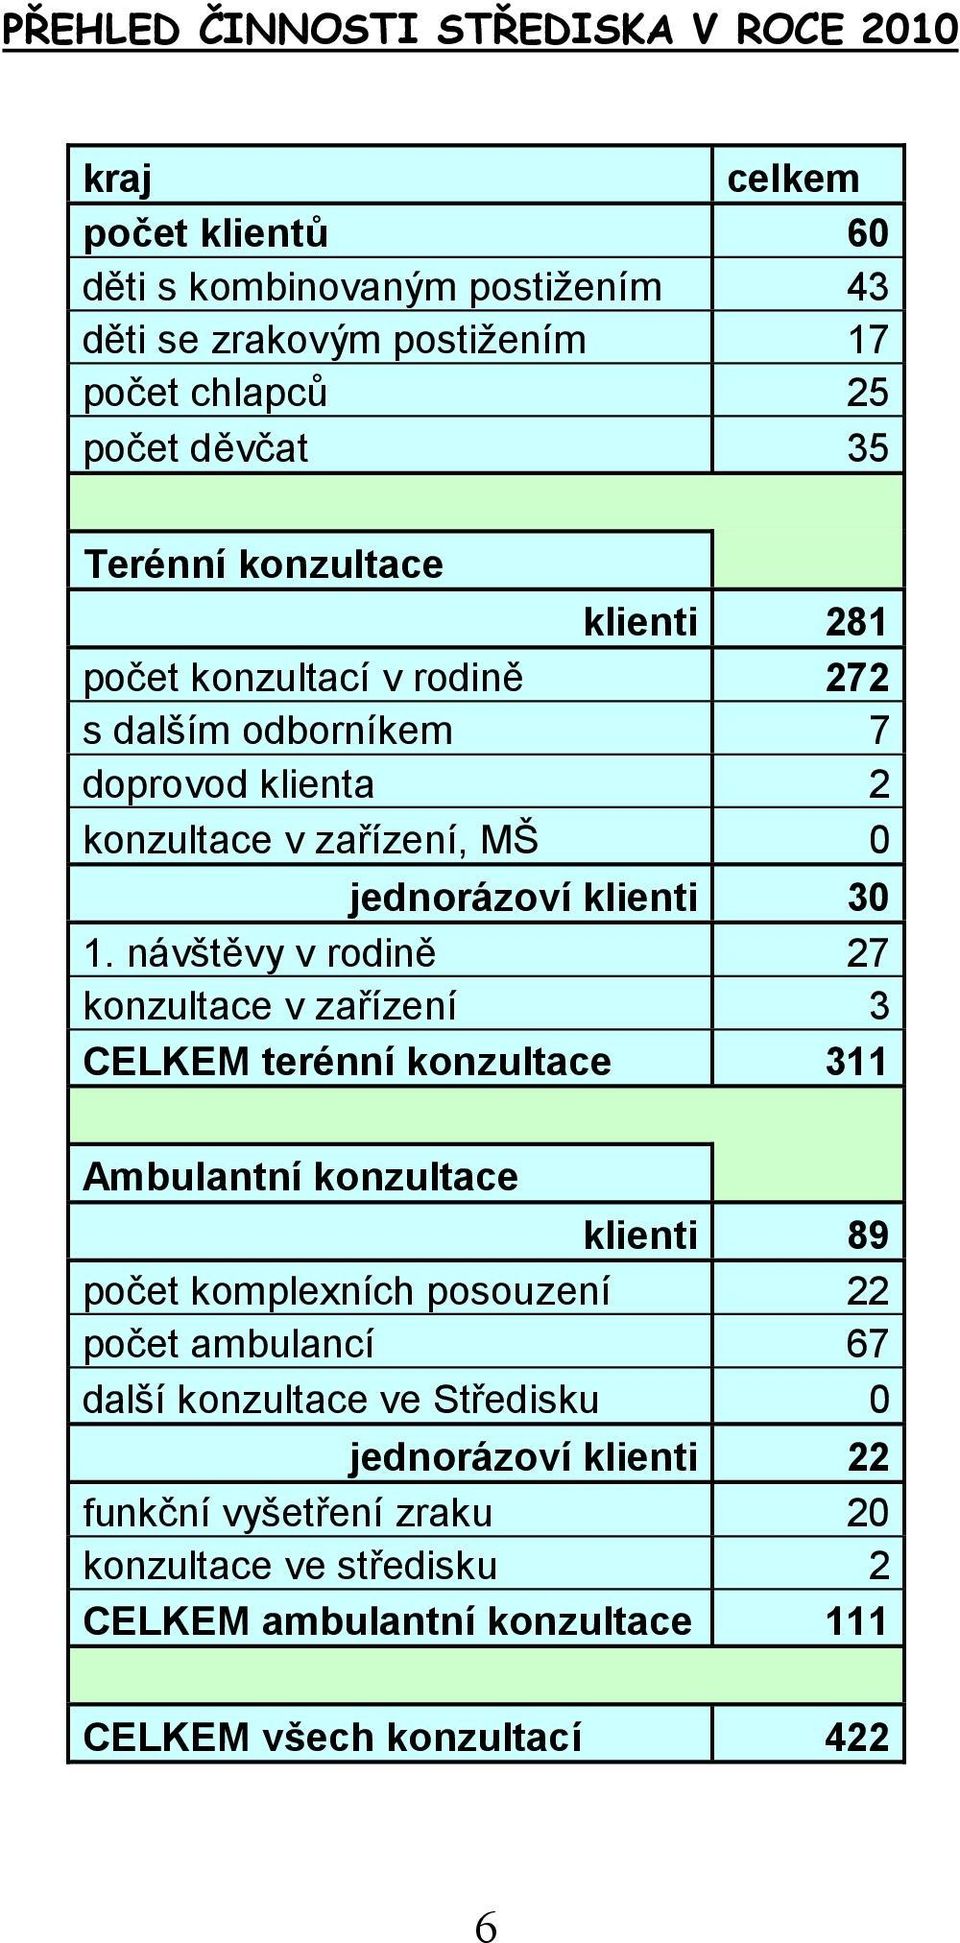 návštěvy v rodině 27 konzultace v zařízení 3 CELKEM terénní konzultace 311 Ambulantní konzultace klienti 89 počet komplexních posouzení 22 počet ambulancí 67